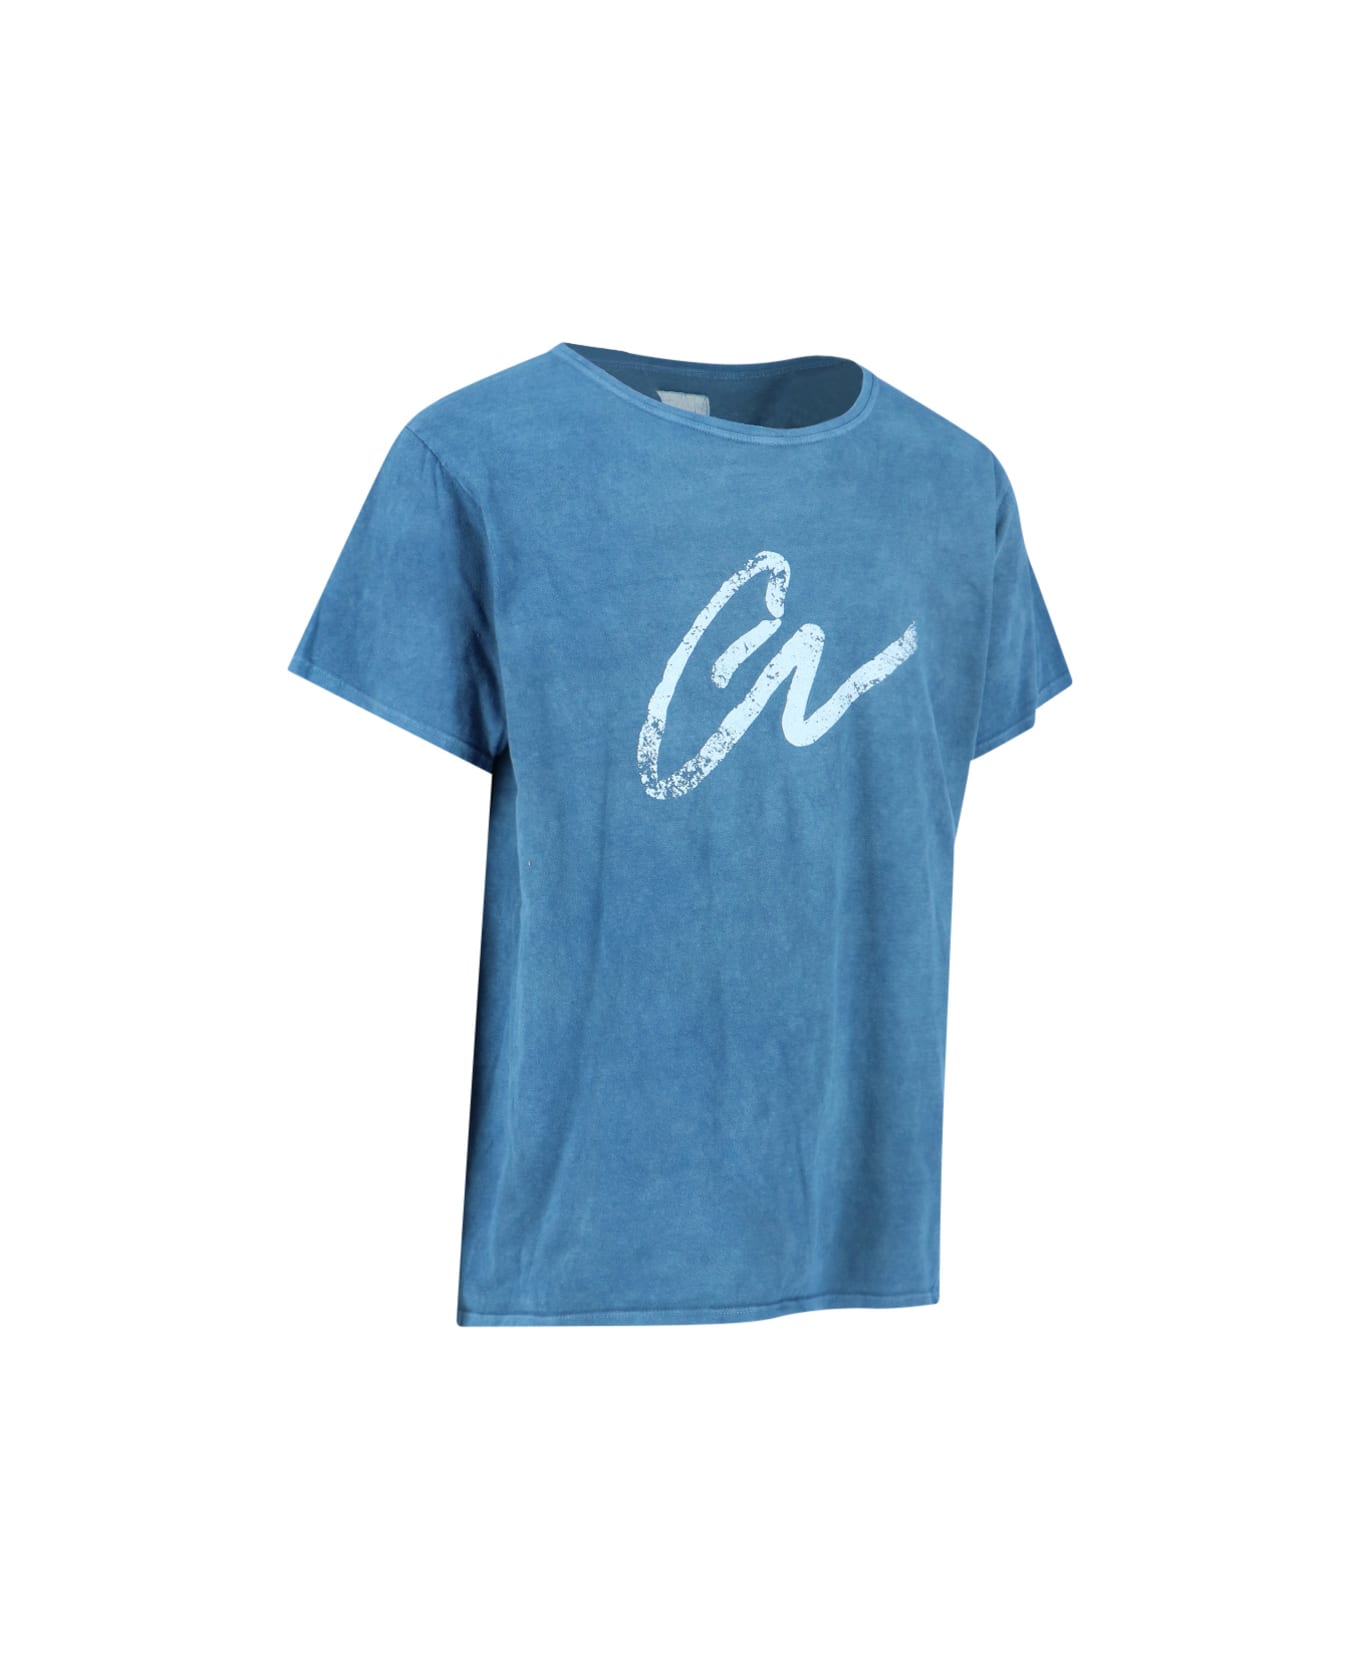 Greg Lauren T-Shirt - Light blue